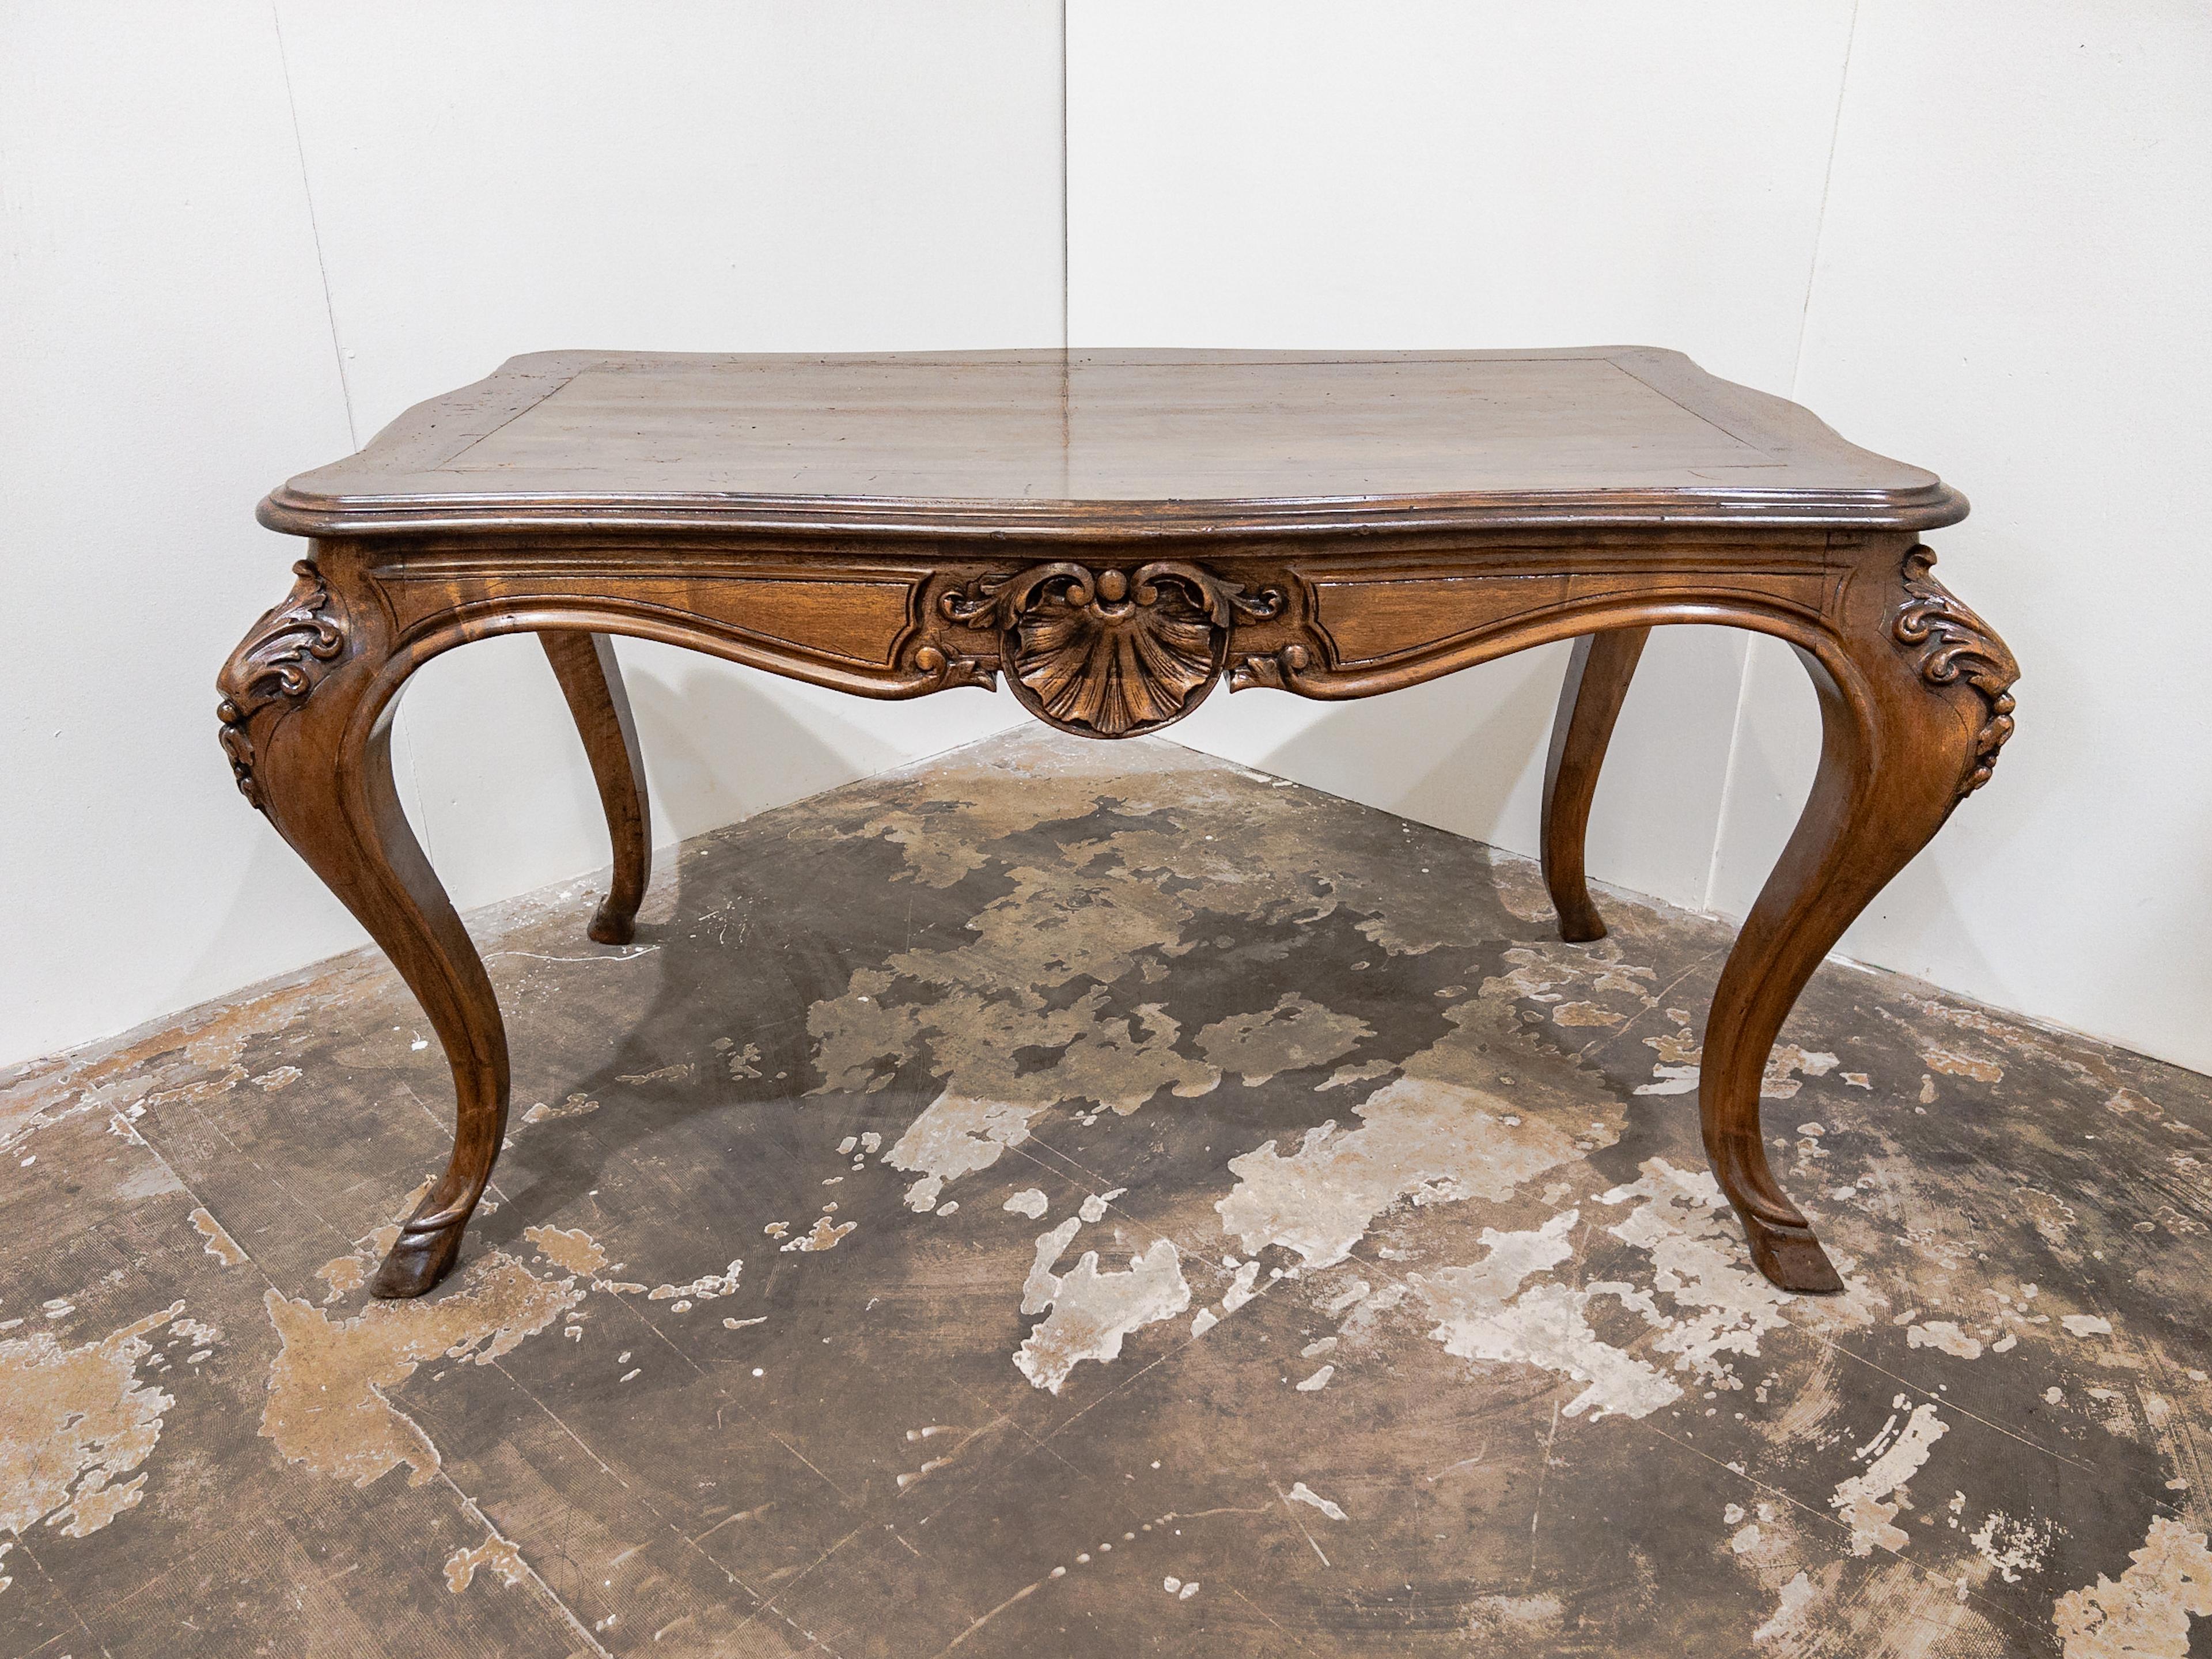 Italienischer Nussbaumtisch im Louis-XV-Stil des 19. Jahrhunderts mit Schürze und geschnitzten Details an den Beinen ist ein exquisites und fein gearbeitetes Möbelstück, das aus Italien um 1800 stammt.

Der Tisch hat eine rechteckige oder ovale